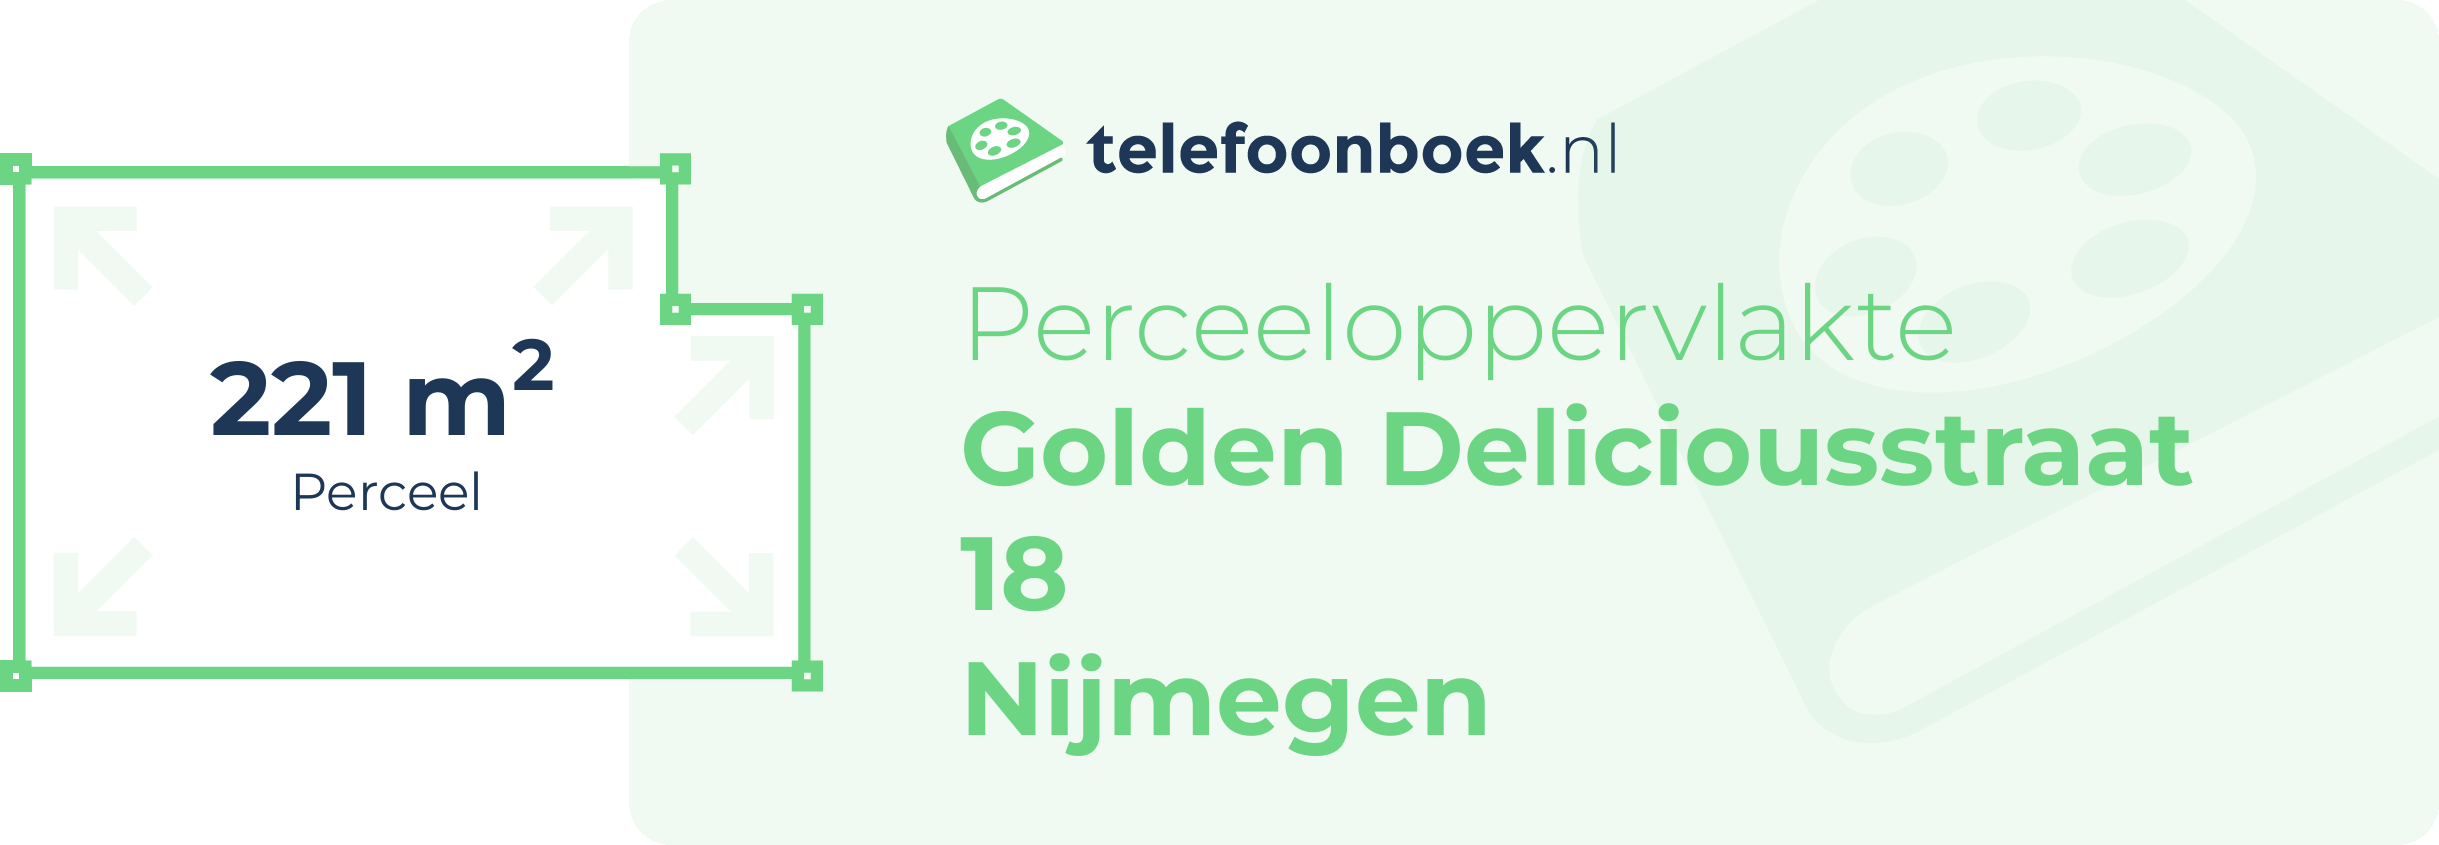 Perceeloppervlakte Golden Deliciousstraat 18 Nijmegen